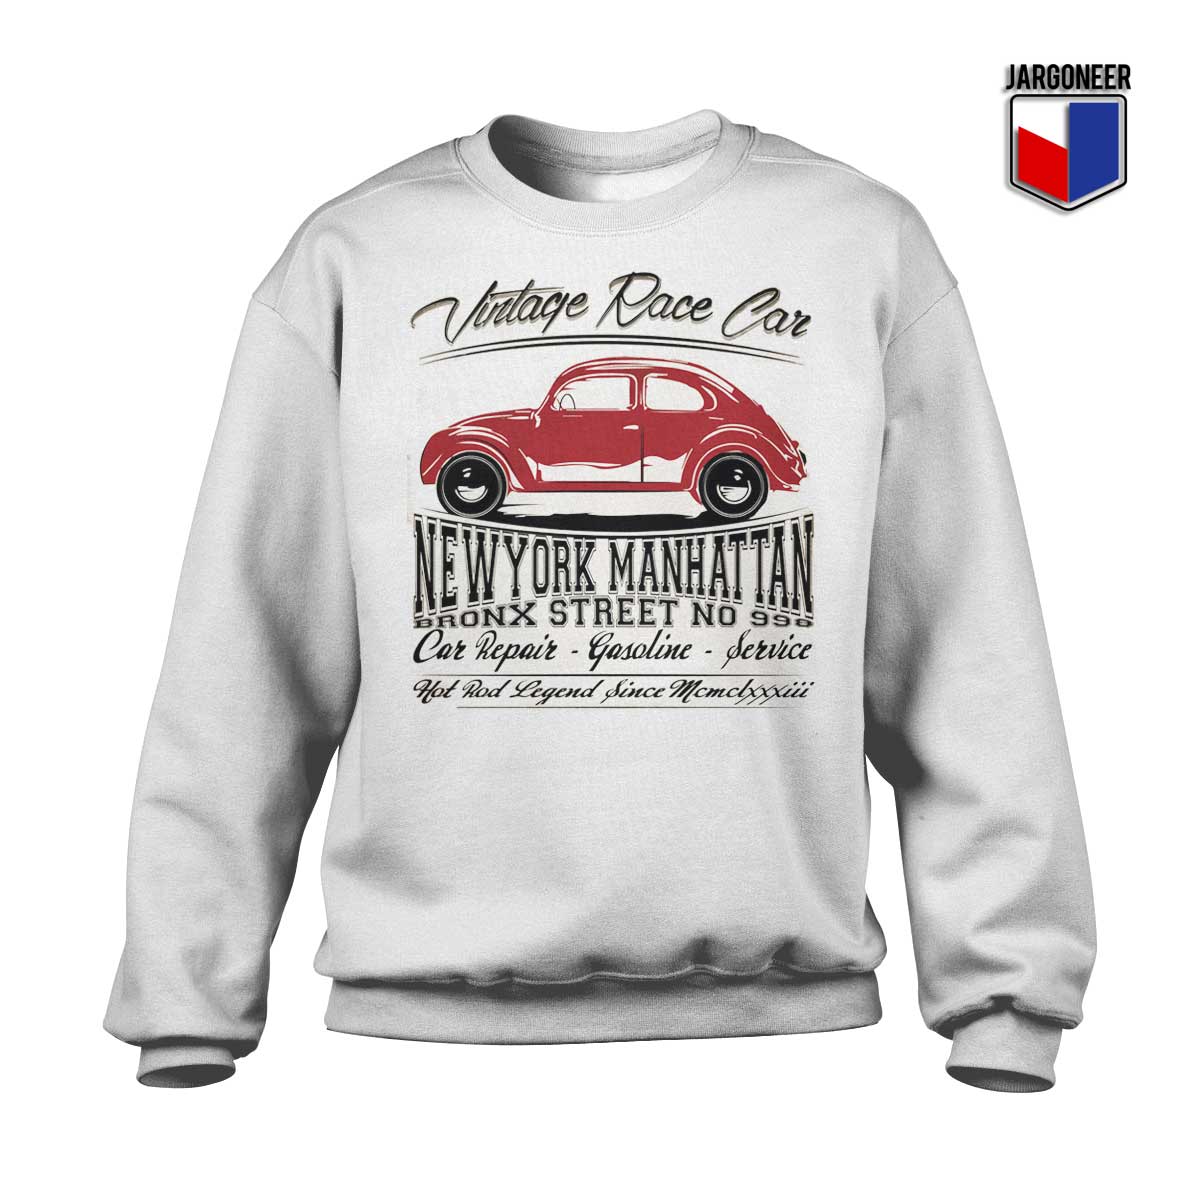 Vintage Race Car Sweatshirt - Shop Unique Graphic Cool Shirt Designs